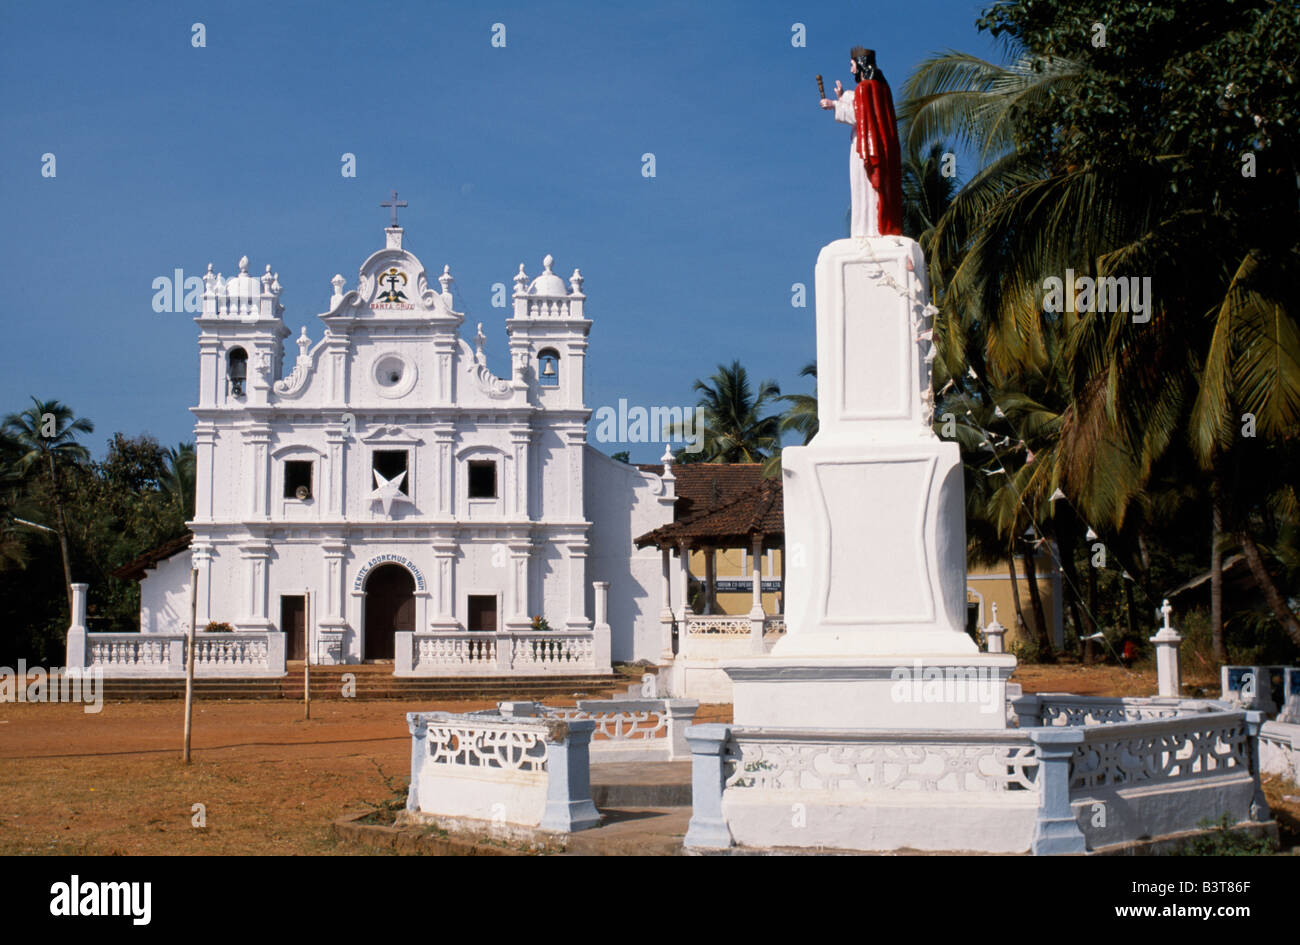 India, Goa, Cavelossim. La pittoresca chiesa imbiancate presso il villaggio di Cavelossim. Chiese dipinte di bianco sono uno del simbolo di Goa e un lascito del portoghese. Foto Stock